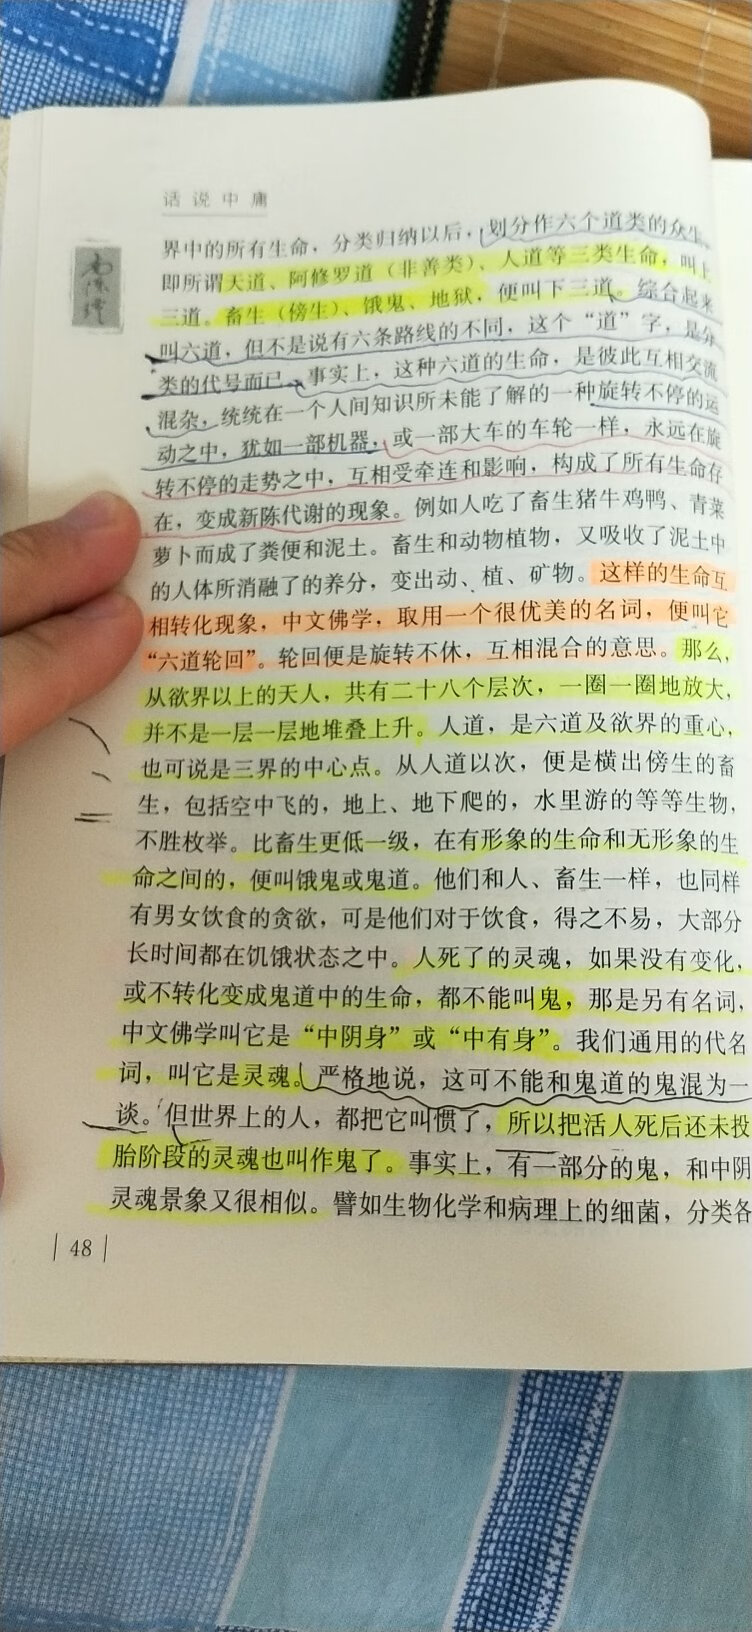 比较不错，非常非常喜欢南怀瑾老师的书，几乎快买齐了，学习中国传统文化没什么不好的，哈哈。